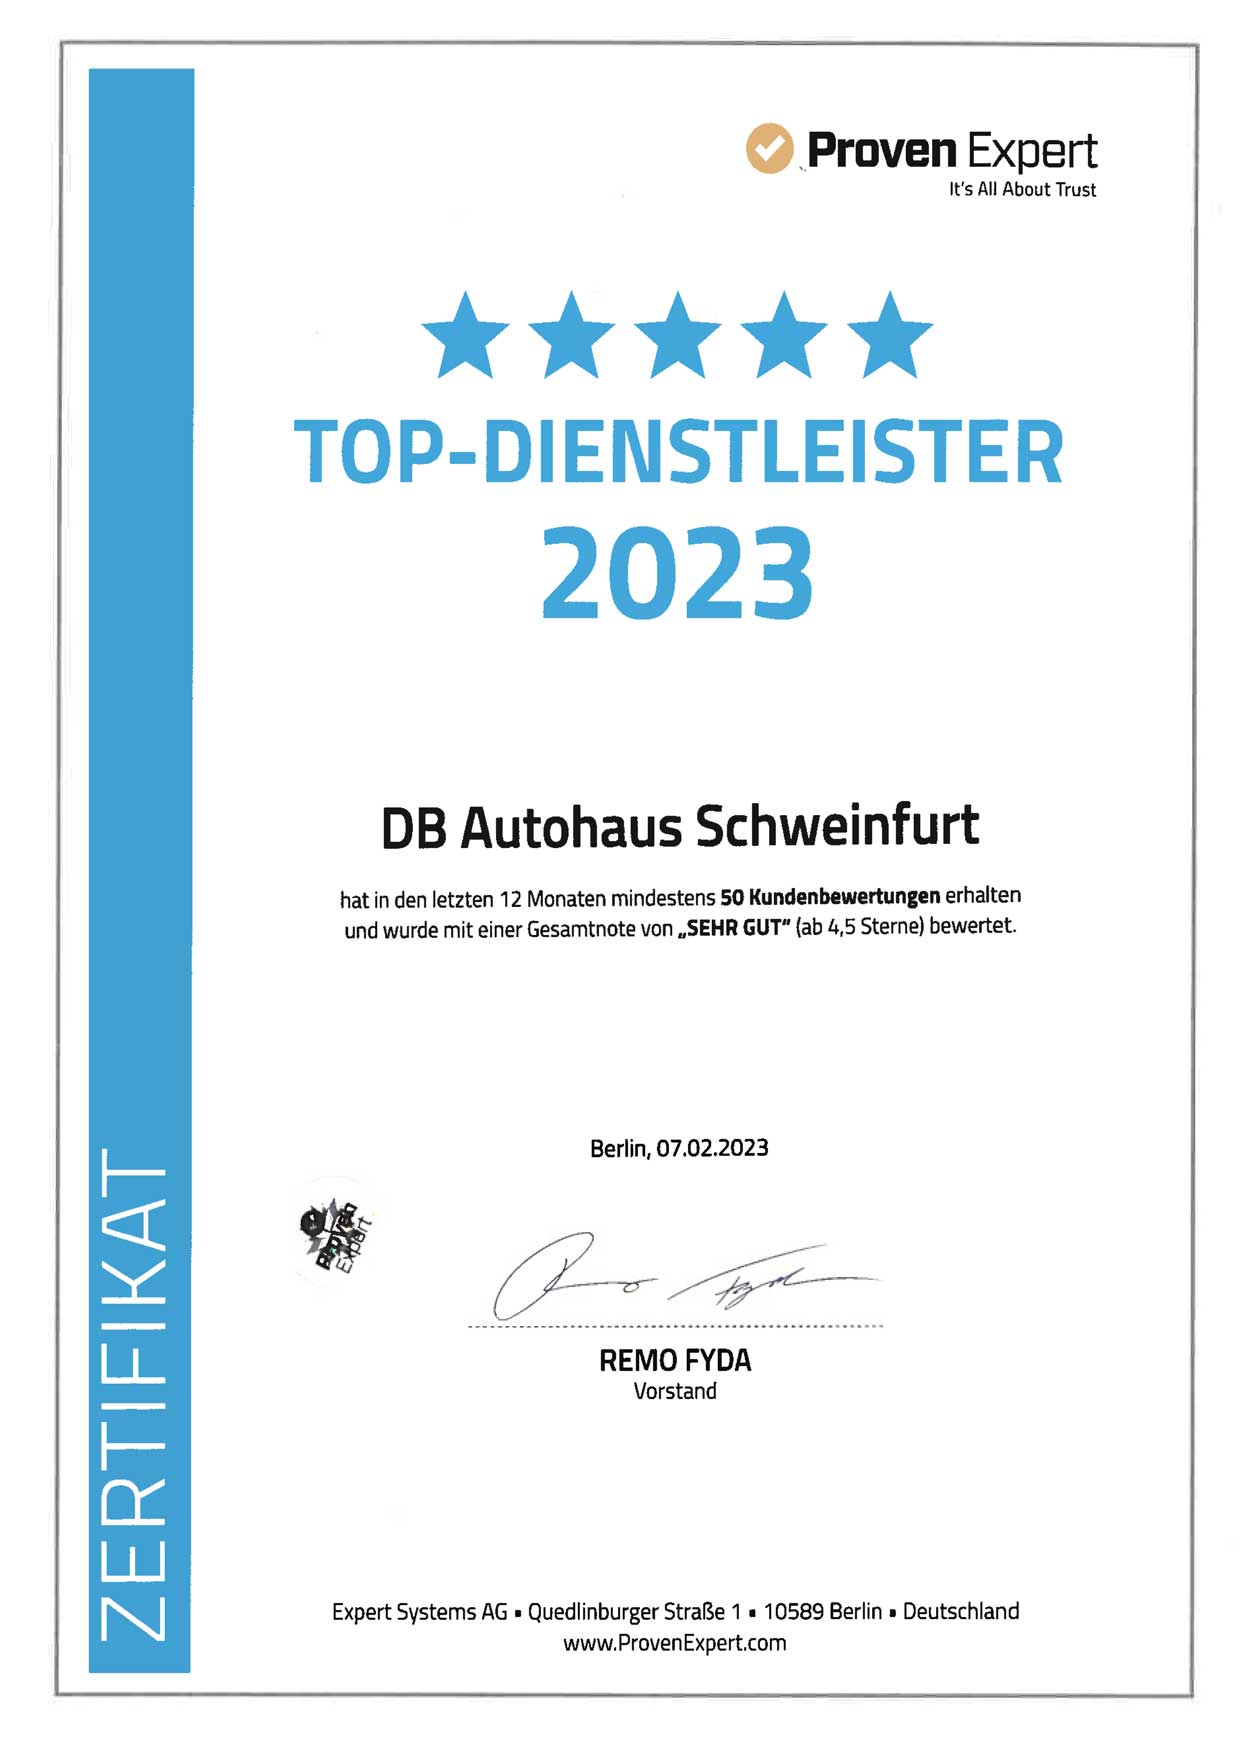 DB Autohaus Schweinfurt wurde als Top-Dienstleister von Proven Expert ausgezeichnet